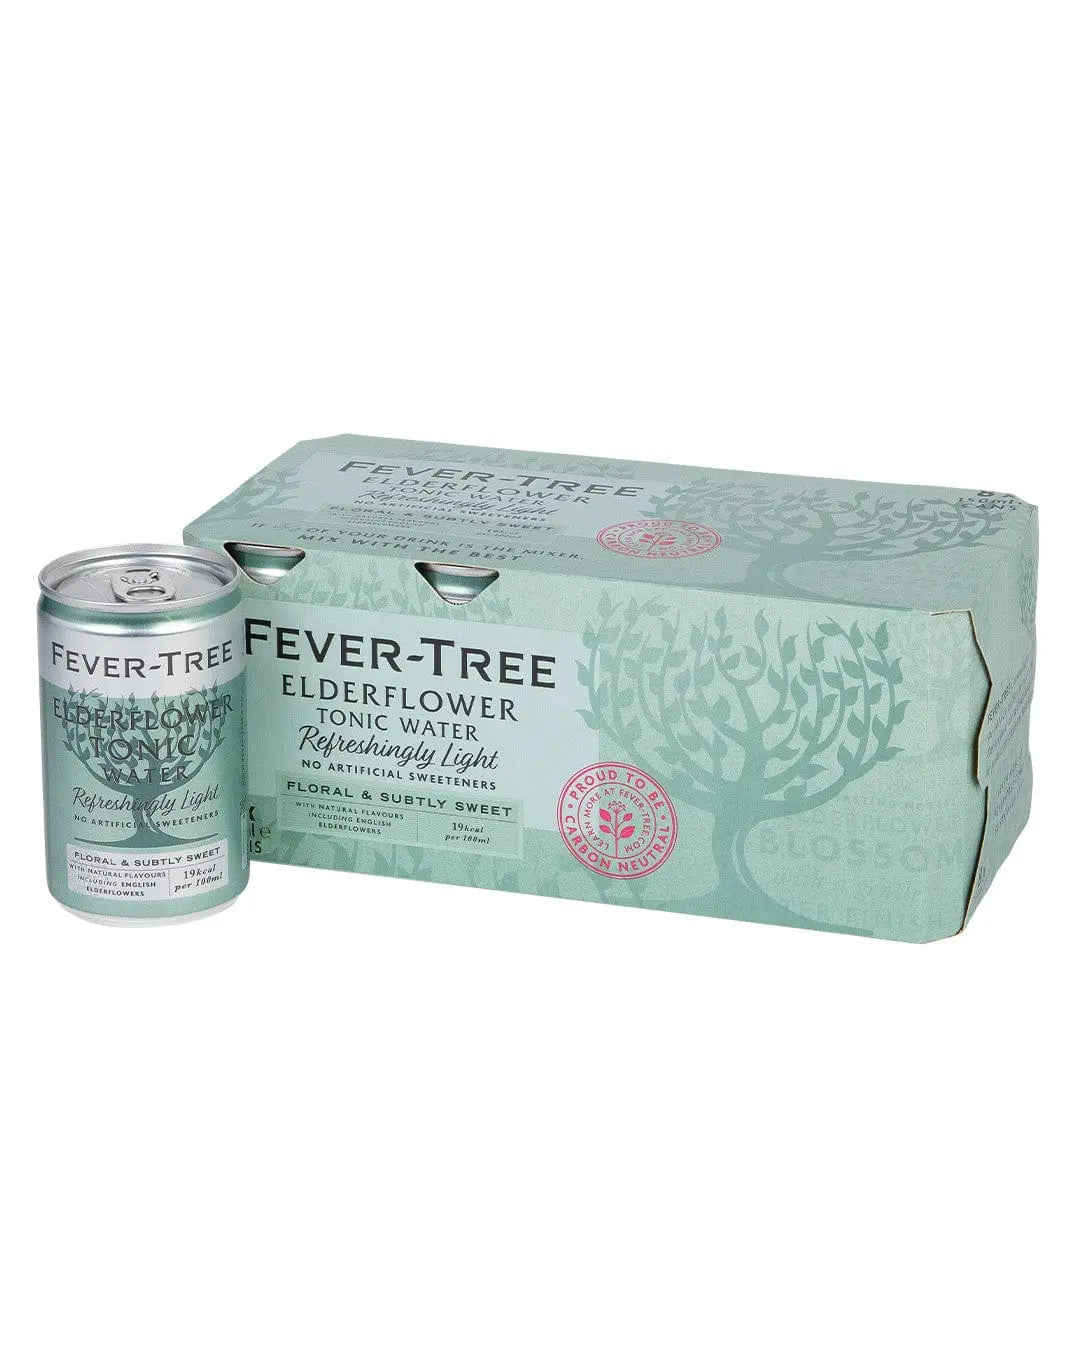 Fever-Tree Refreshingly Light Elderflower Tonic Water Fridge Pack, 8 x 150 ml Tonics